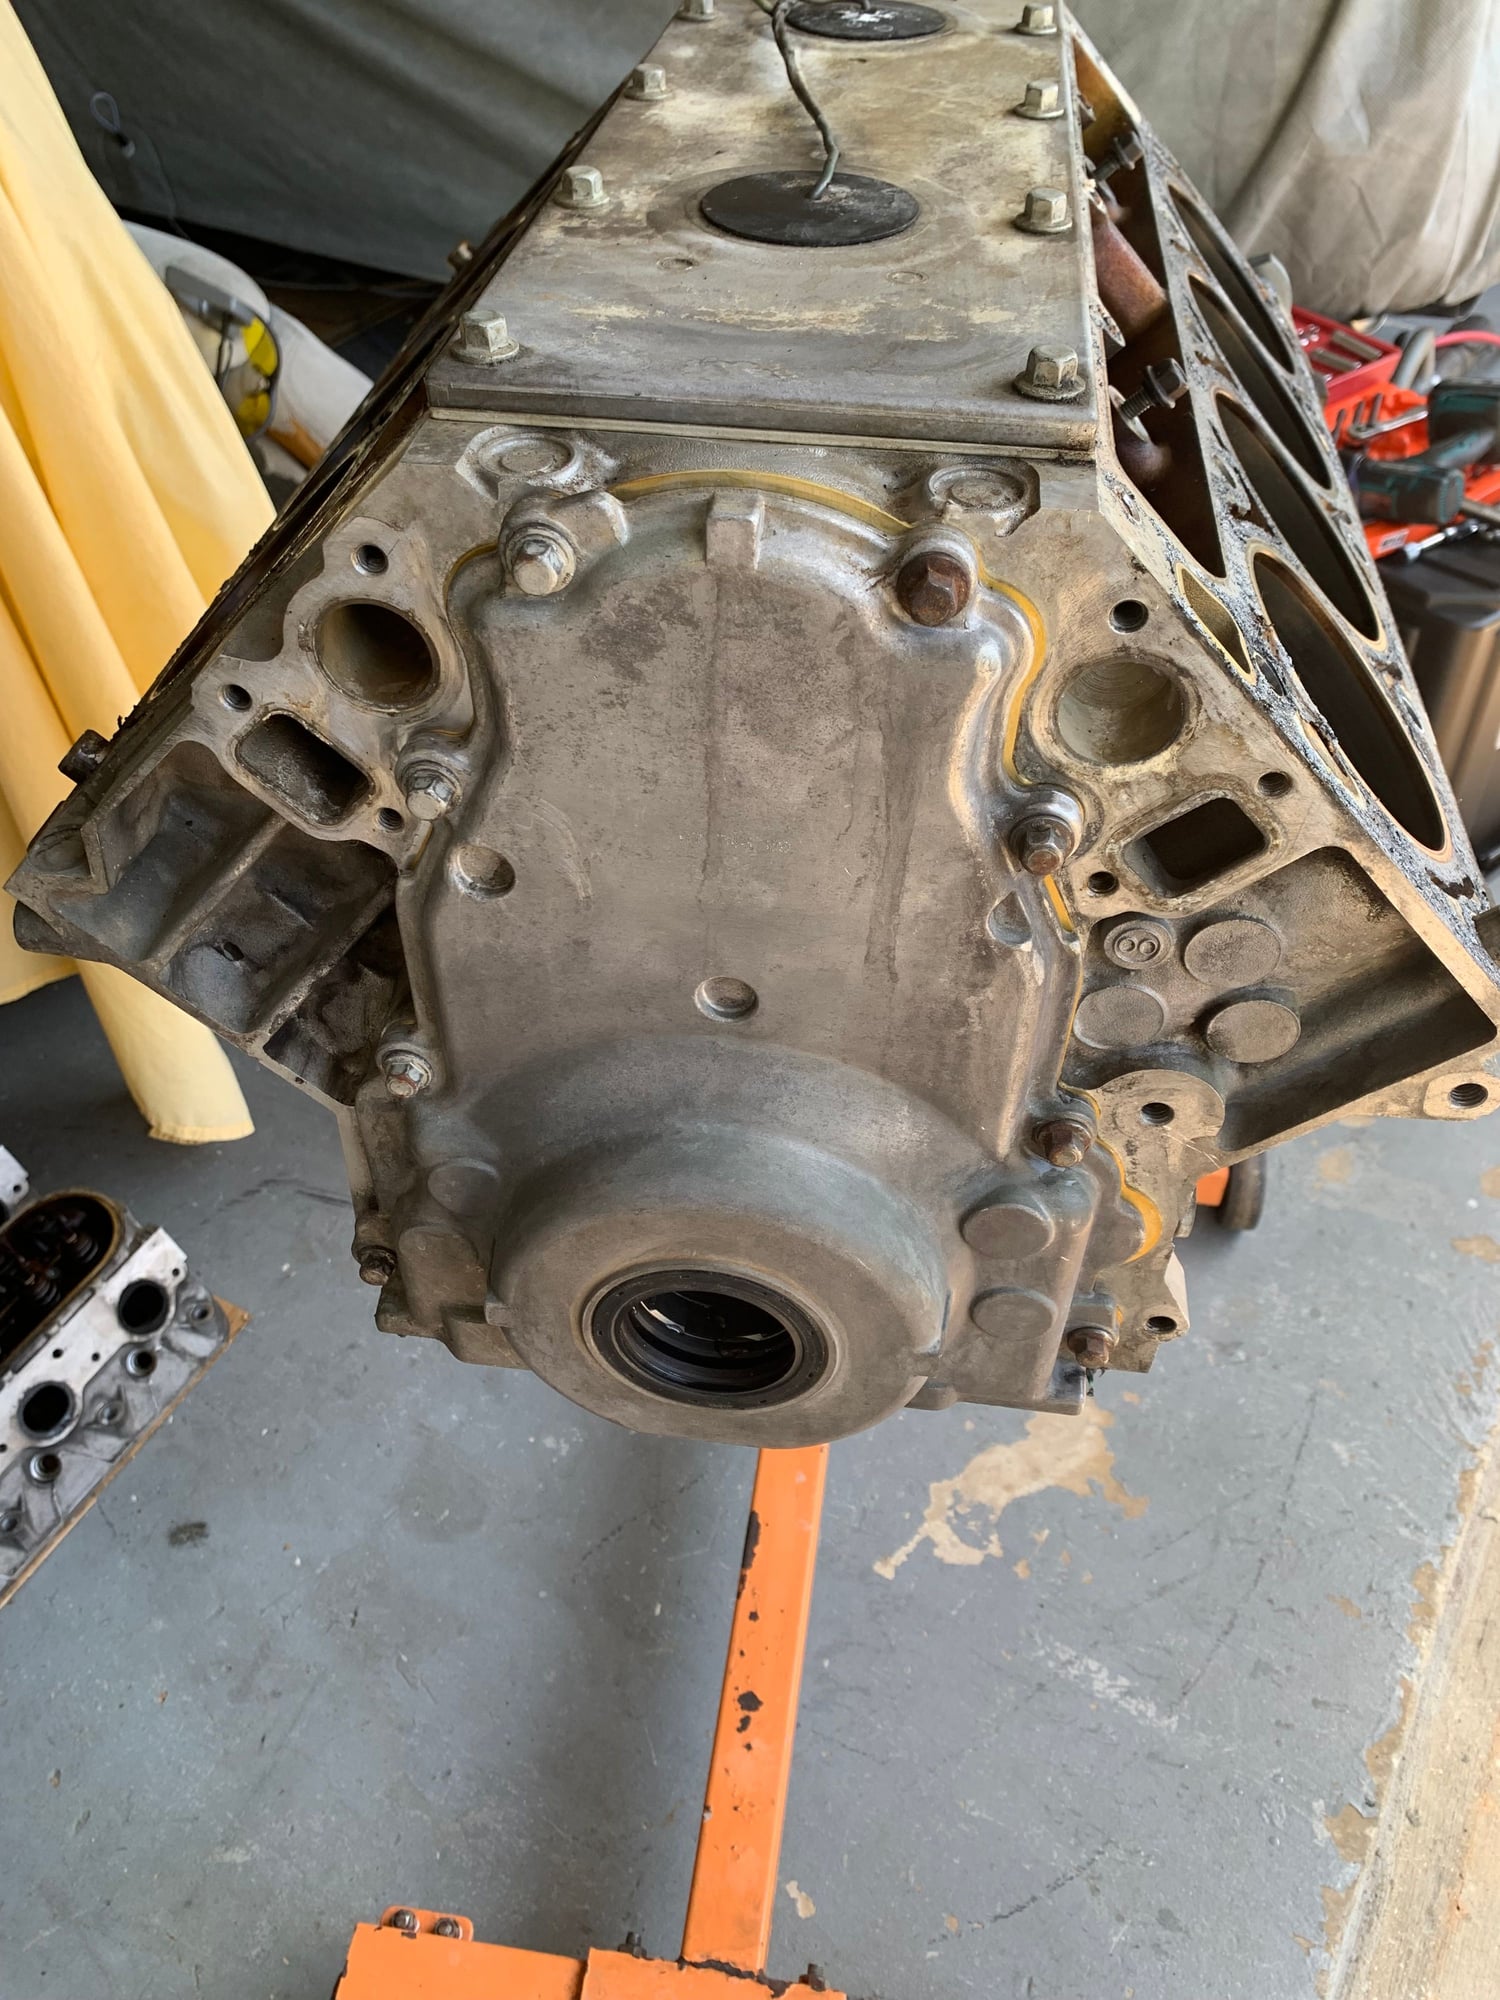 Engine - Complete - 2001 LS1 5.7L aluminum block - Used - 1998 to 2003 Chevrolet Camaro - Pam Beach, FL 33413, United States